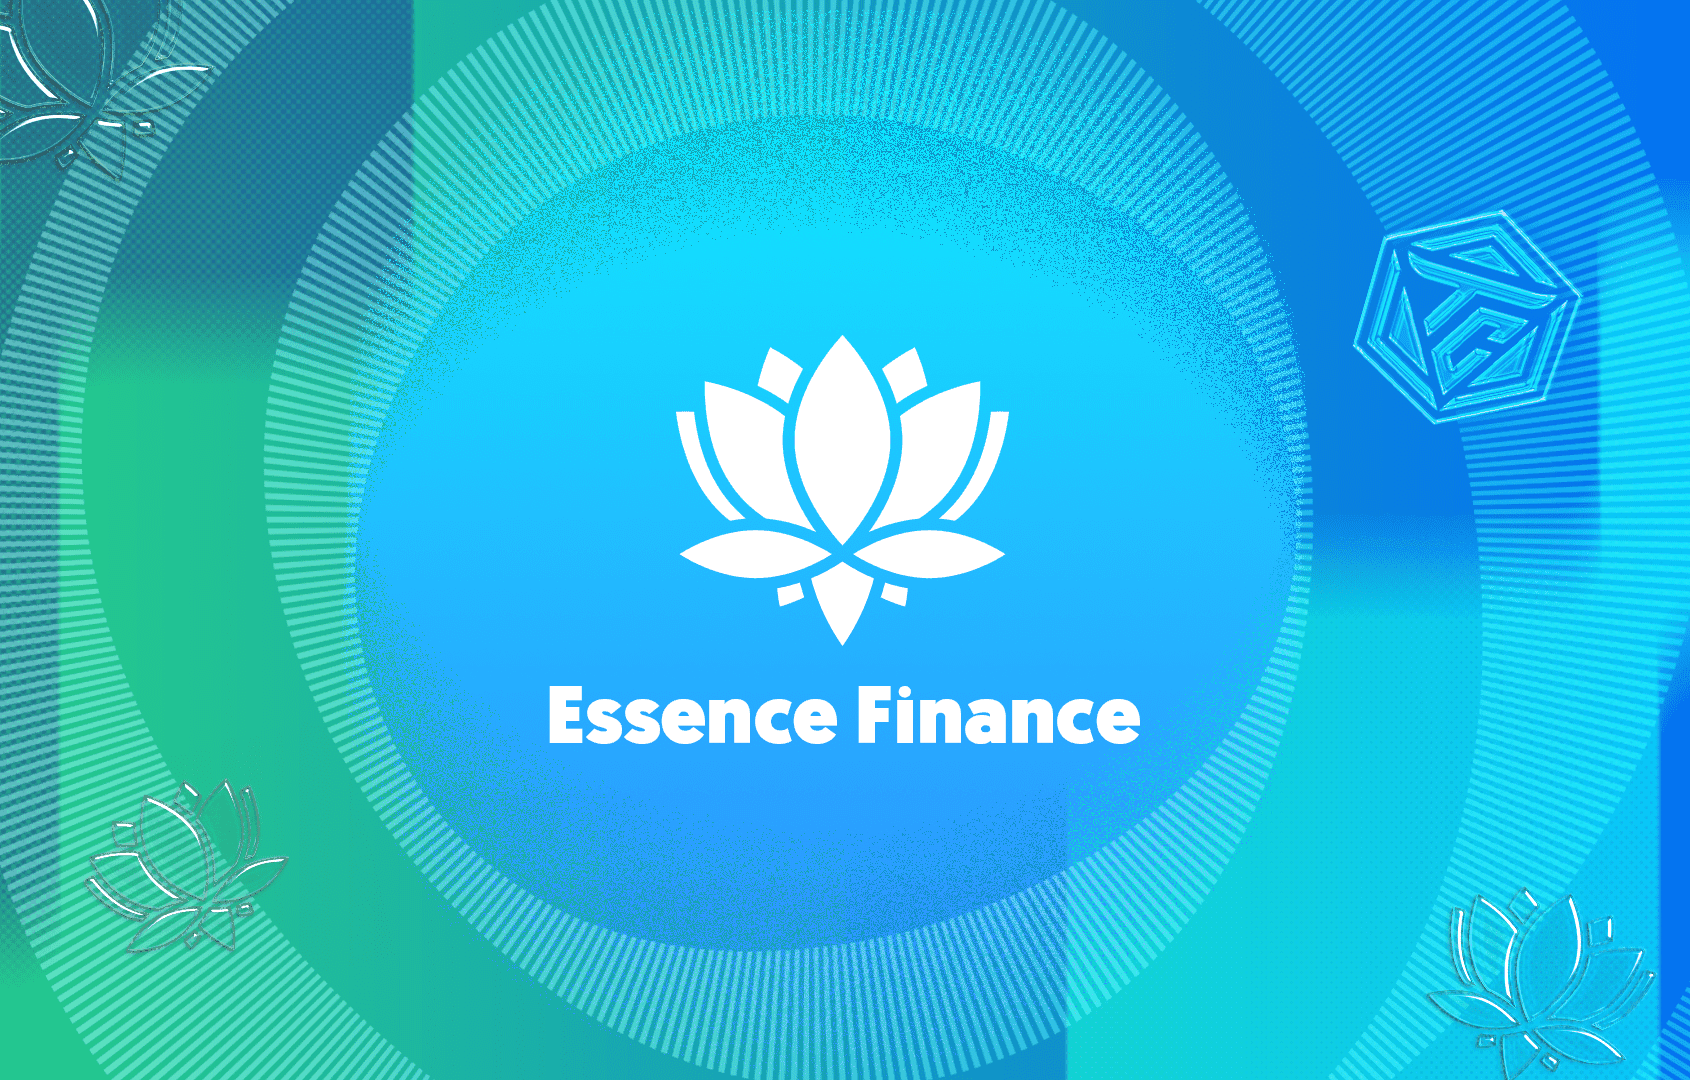 Essence Finance là gì? Phân tích chi tiết dự án tiền điện tử ZEN